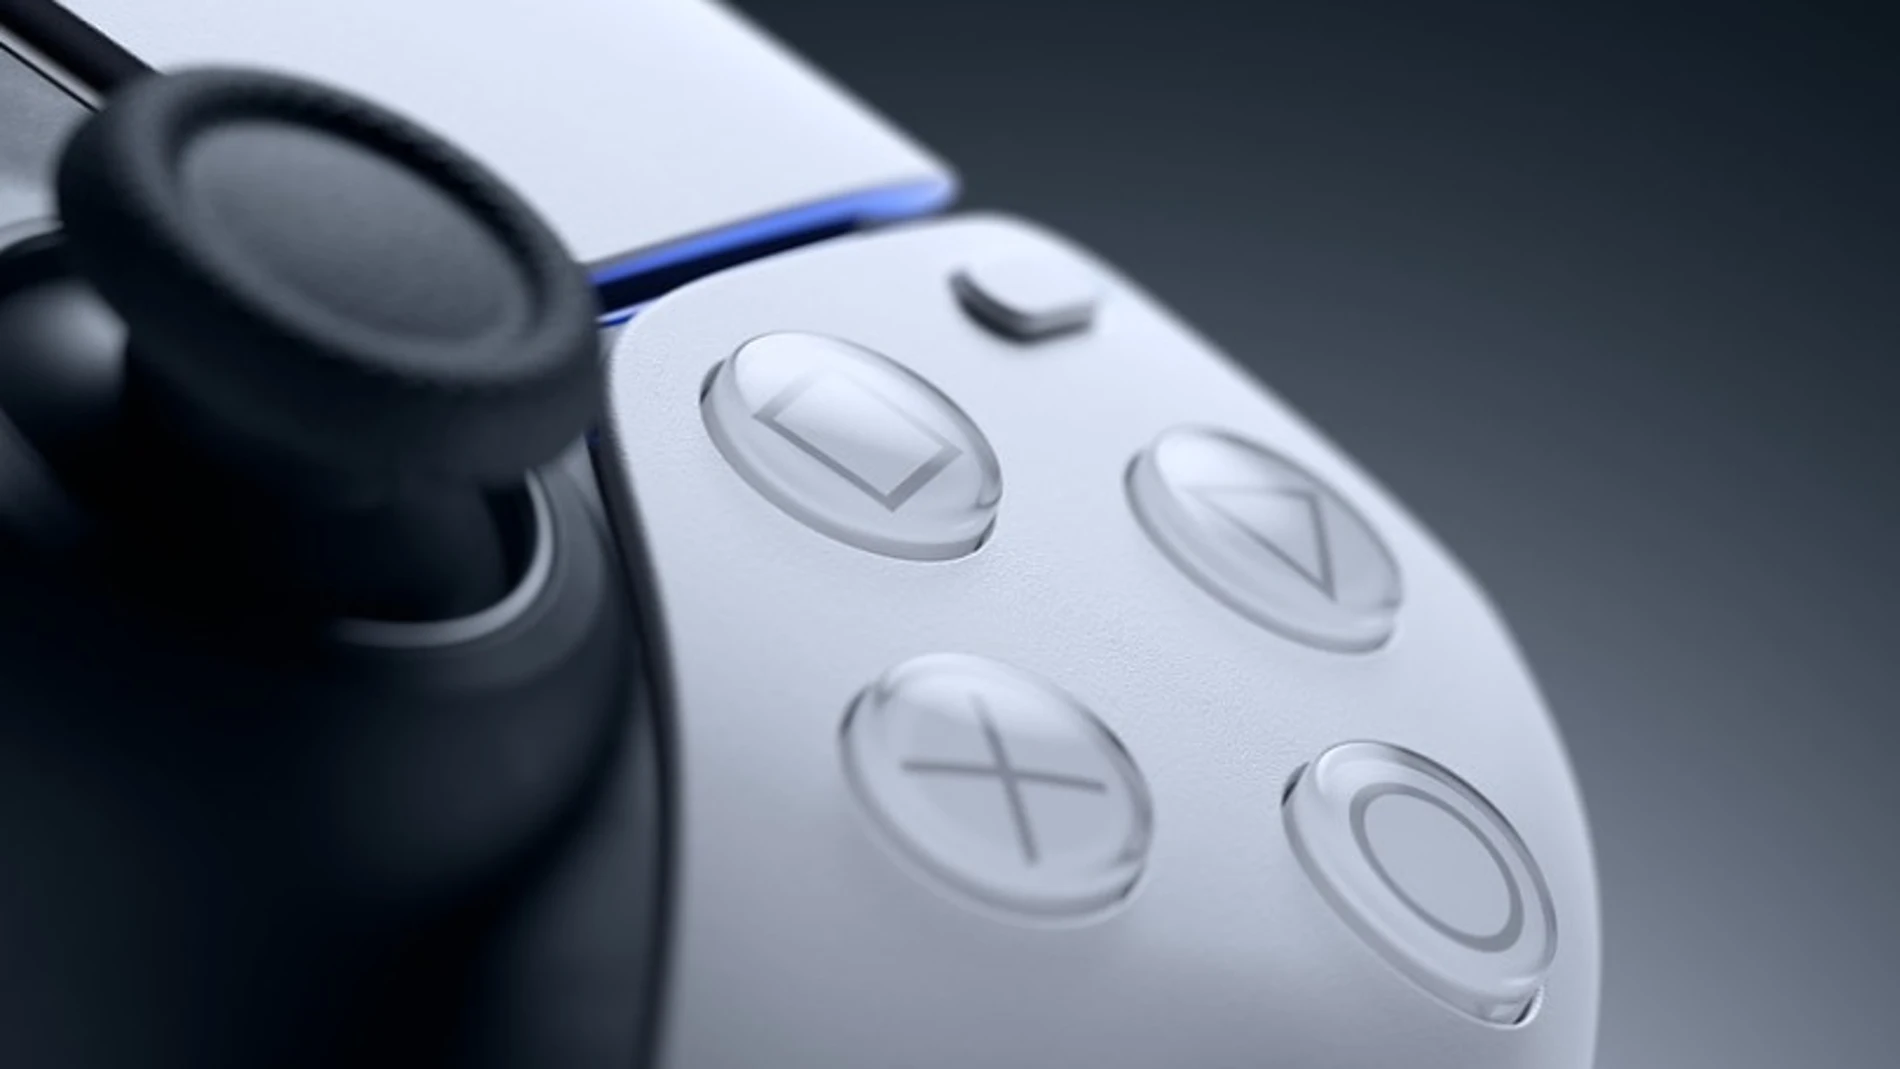 El nuevo "netiflix de videojuegos" de Sony llegará en primavera para competir con el de Microsoft.